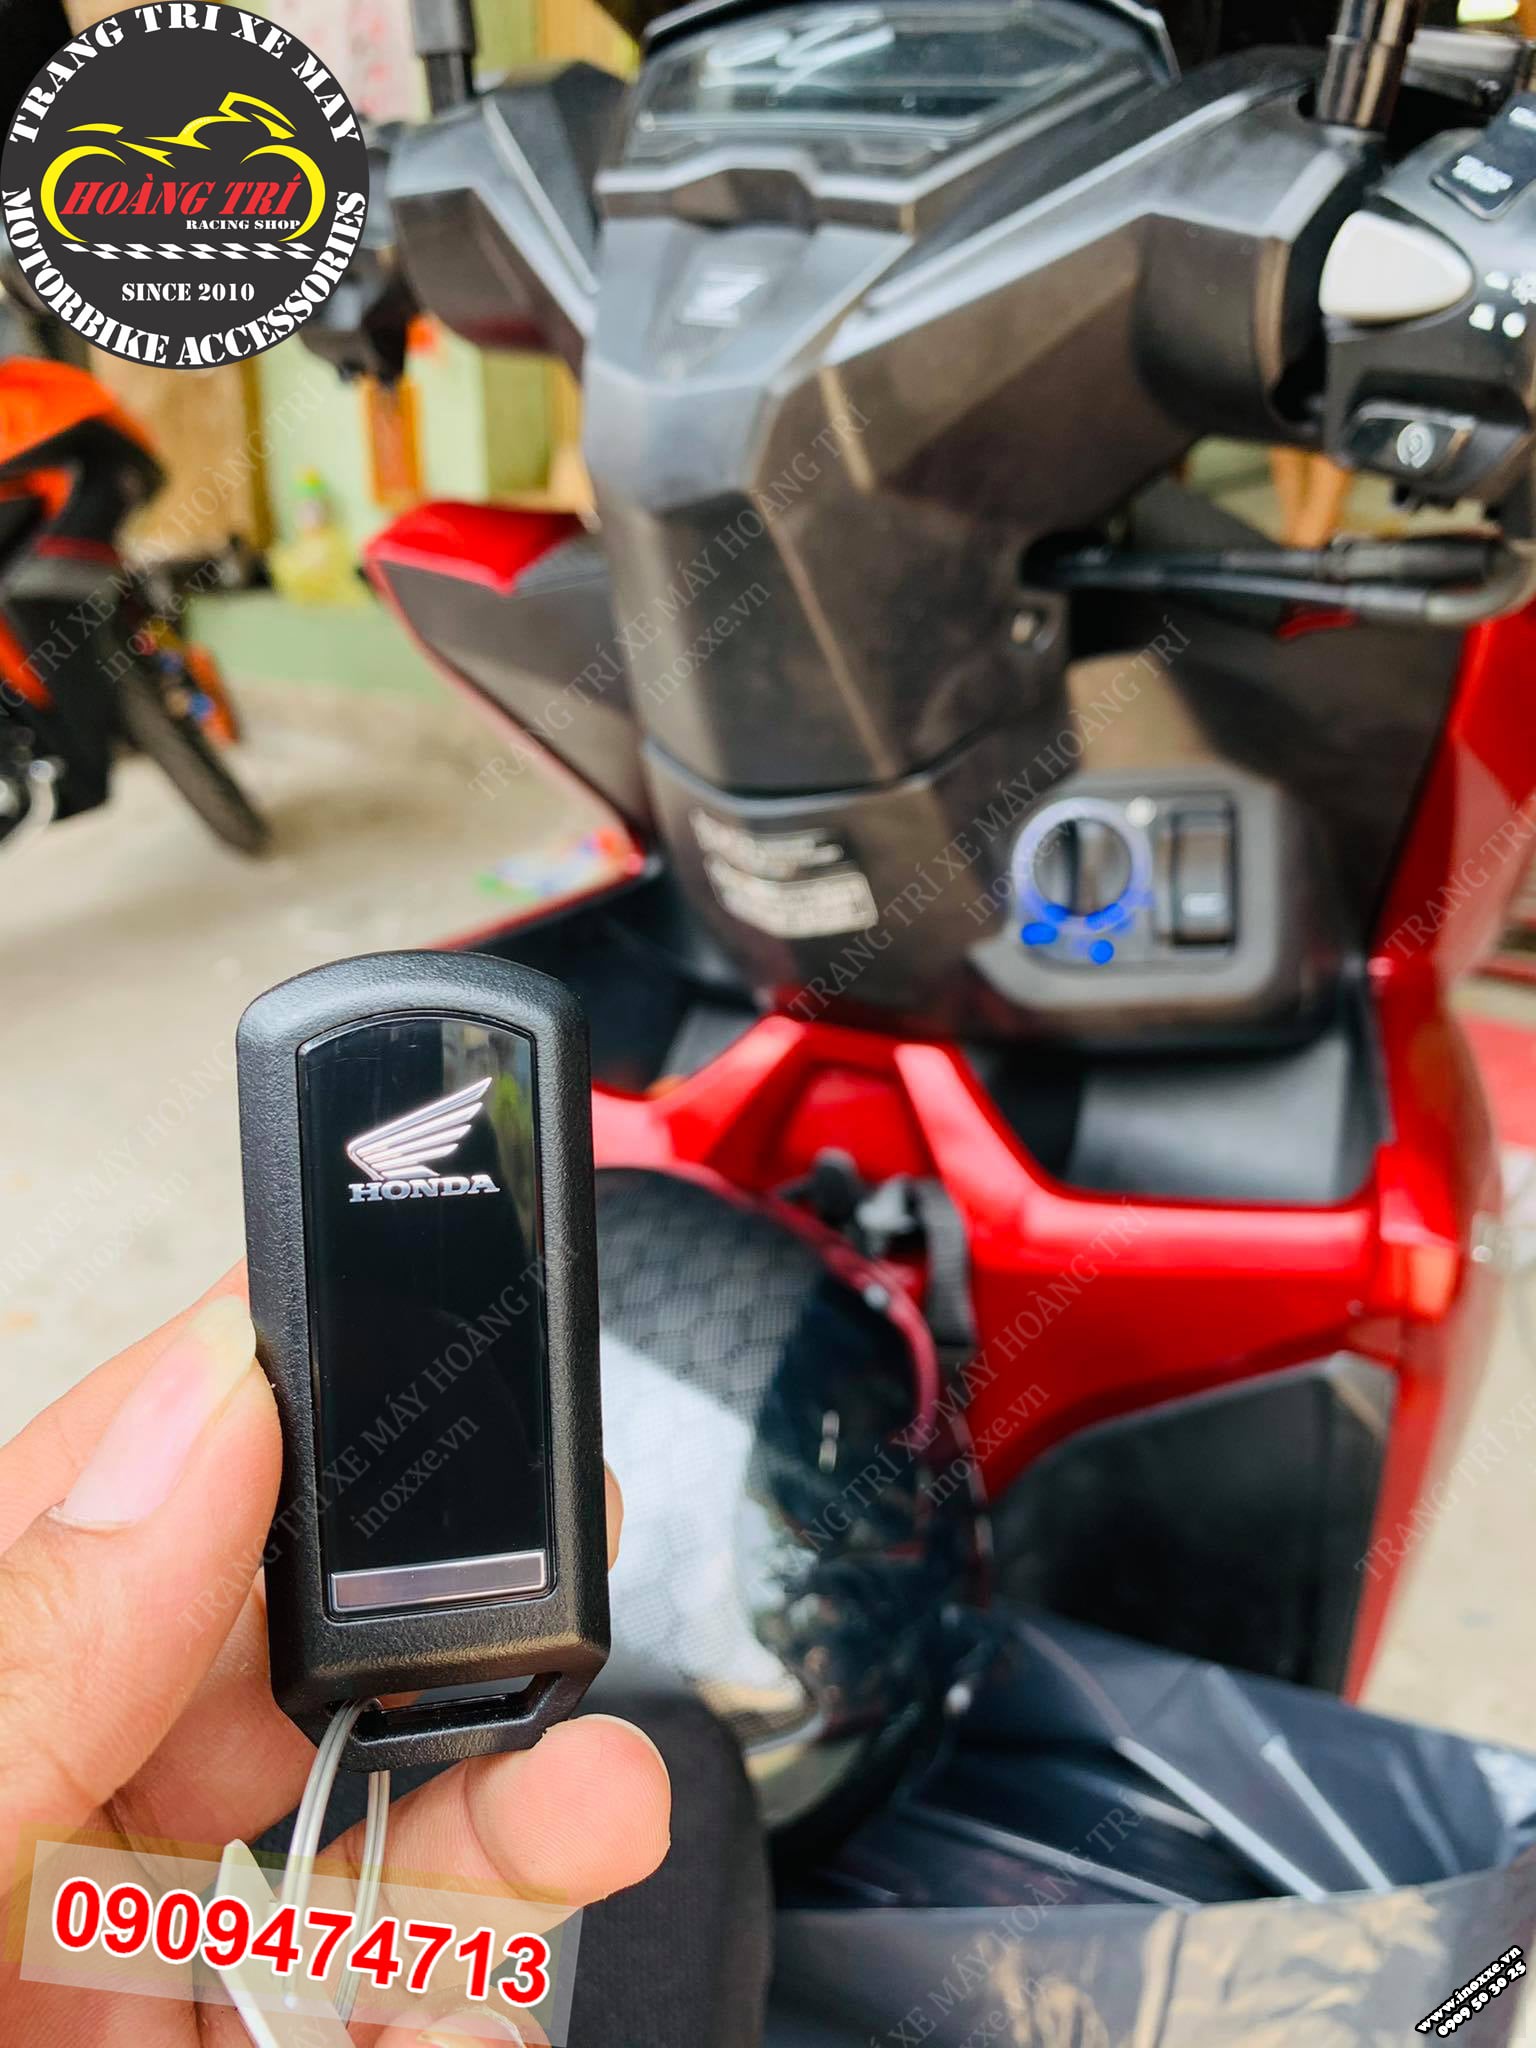 Vario - Click 2018 thay ổ khóa Smartkey 3 nút chính hãng Honda